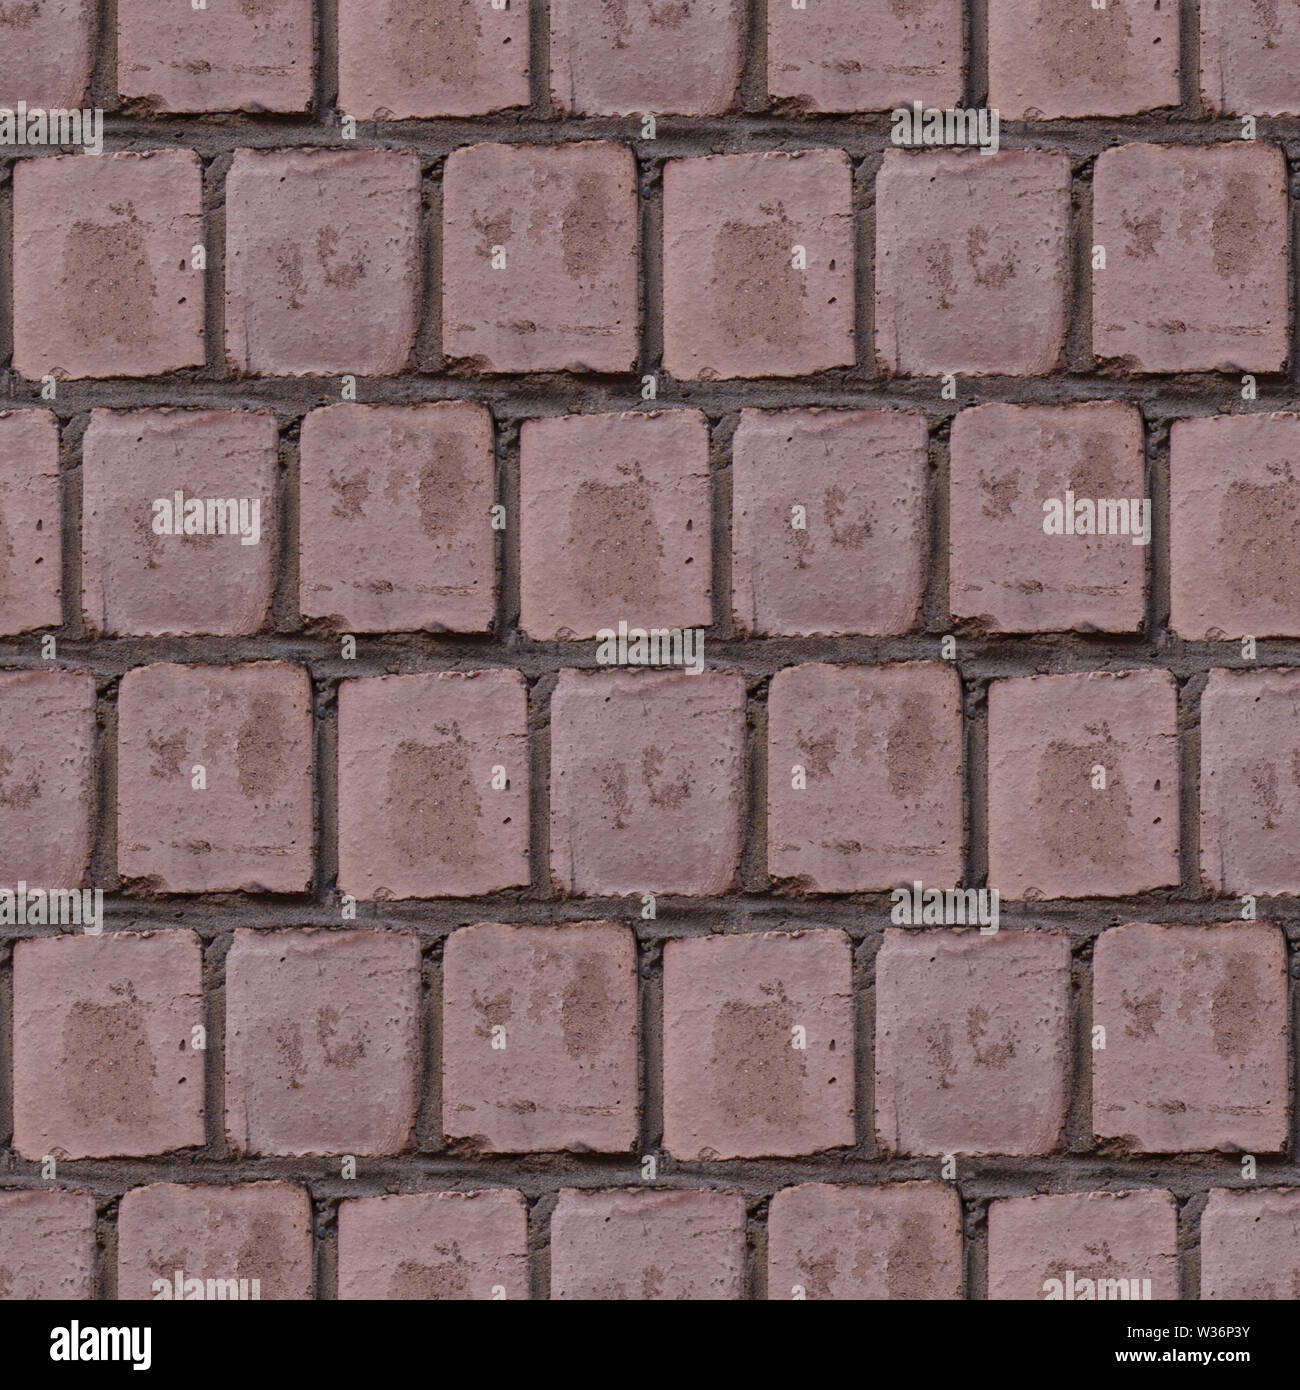 Zusammenfassung nahtlose Textur für Designer mit zarten rosa Steine und Zement. Horizontale Lagen Abbildung. Stockfoto